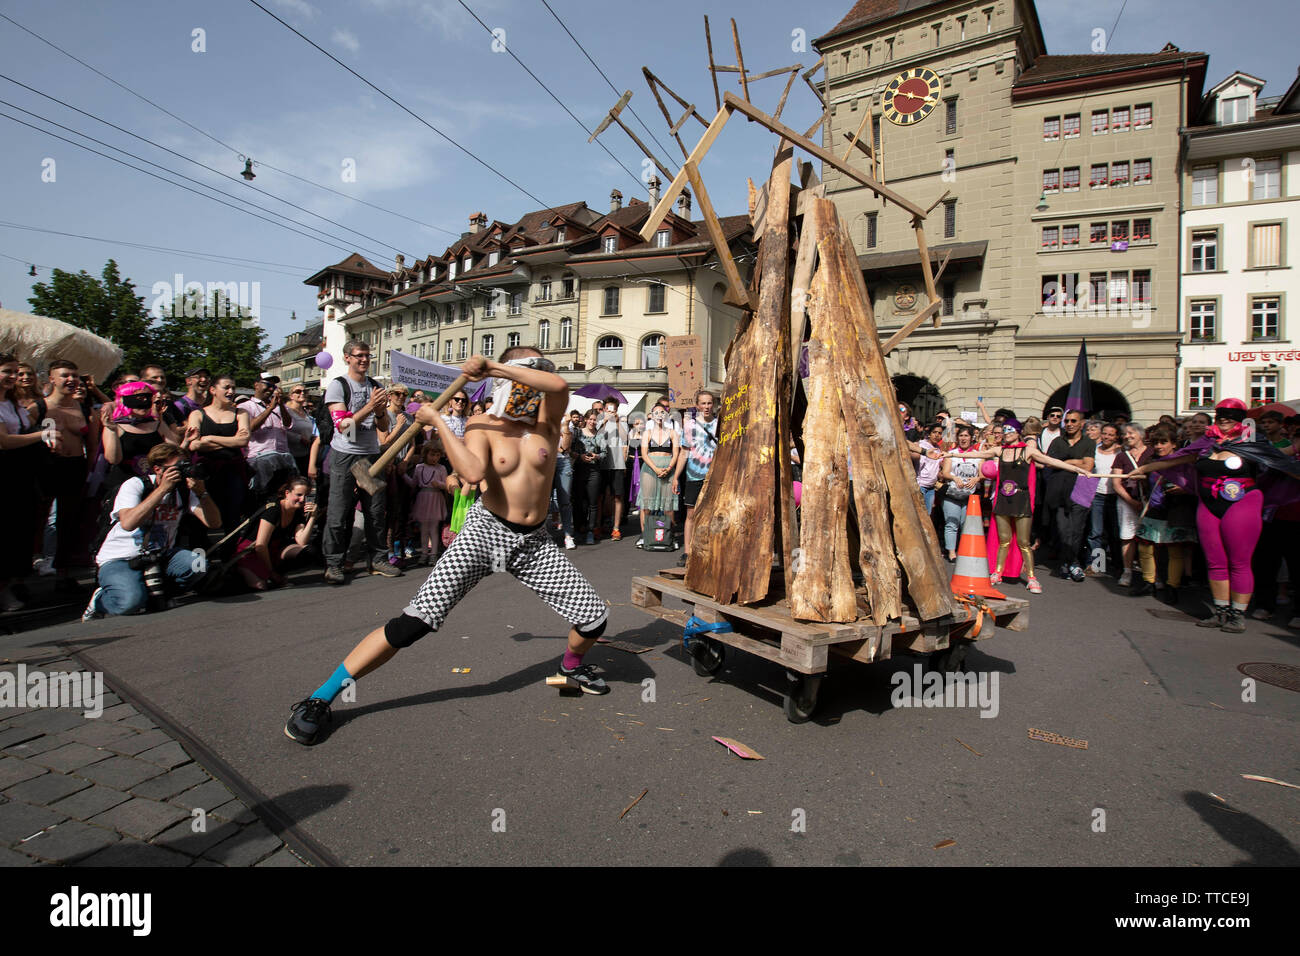 I partecipanti nel femminile sciopero a Berna smash l effige del Patriarcato utilizzando sledgehammers. Il Frauenstreik - Womens sciopero - ha portato un numero record di donne per le strade in tutte le grandi città in Svizzera. In Campidoglio Berna, più di 40.000 hanno marciato in tutta la città alla lotta per la parità tra i sessi. Foto Stock